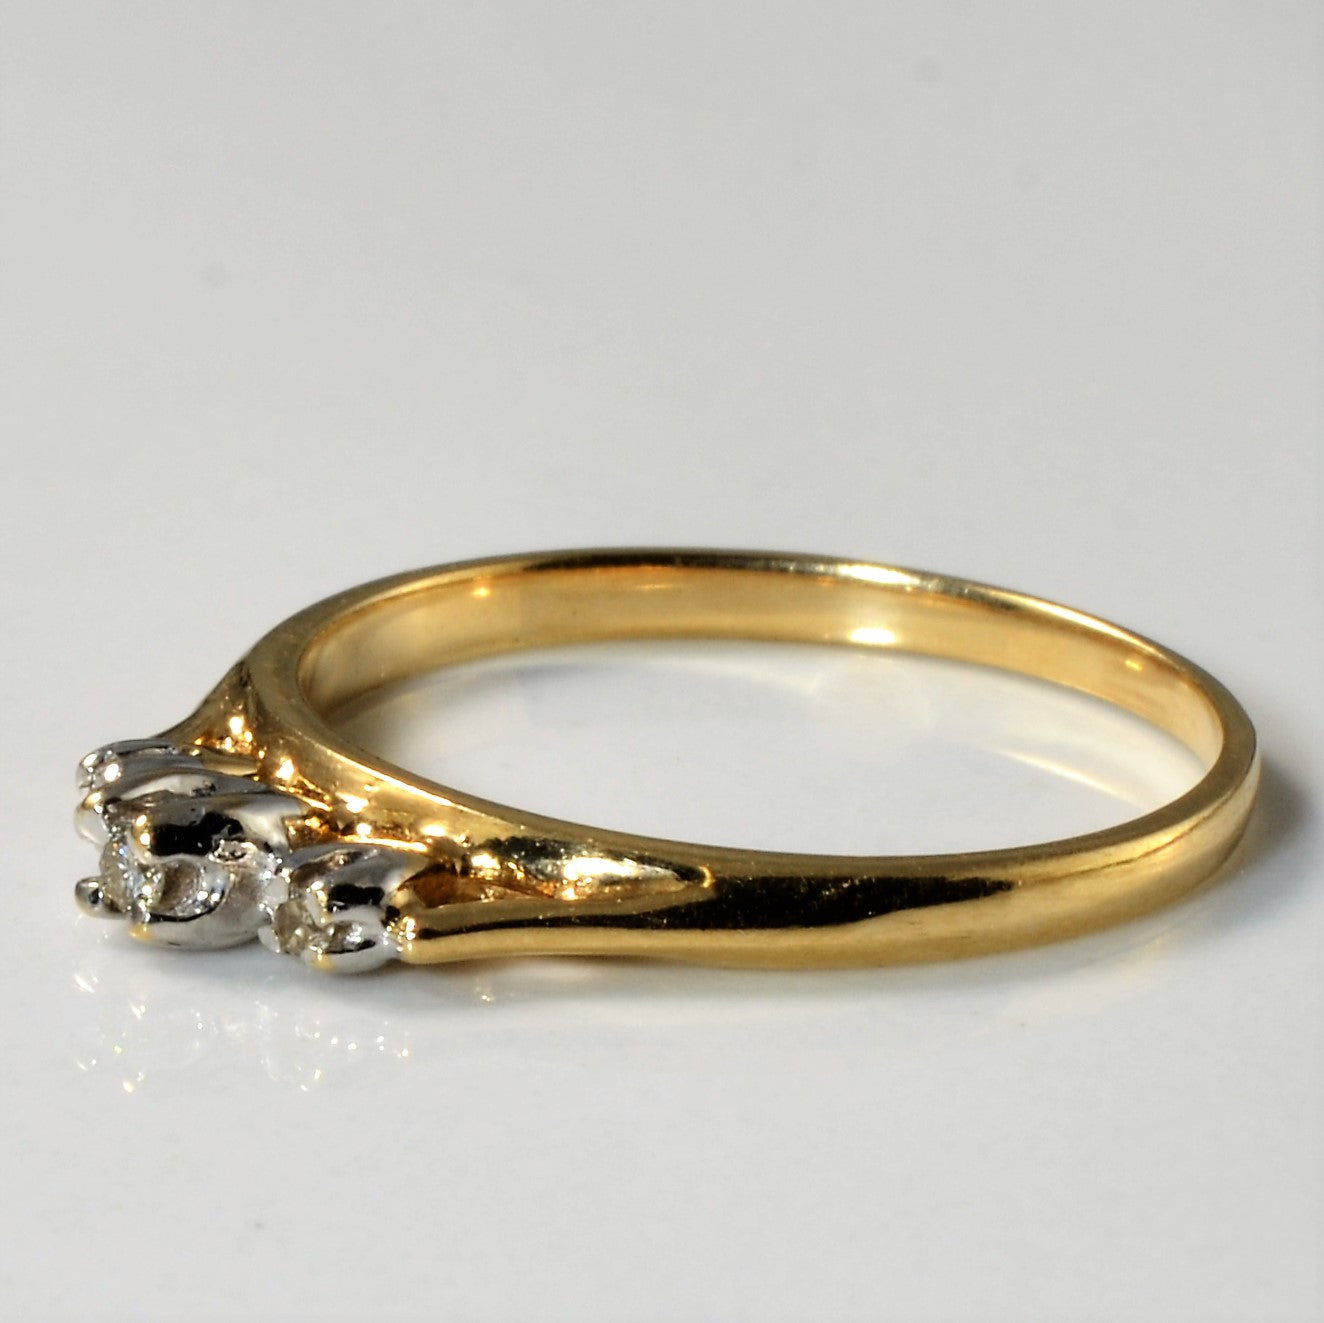 Petite Three Stone Diamond Ring | 0.025ctw | SZ 6 |